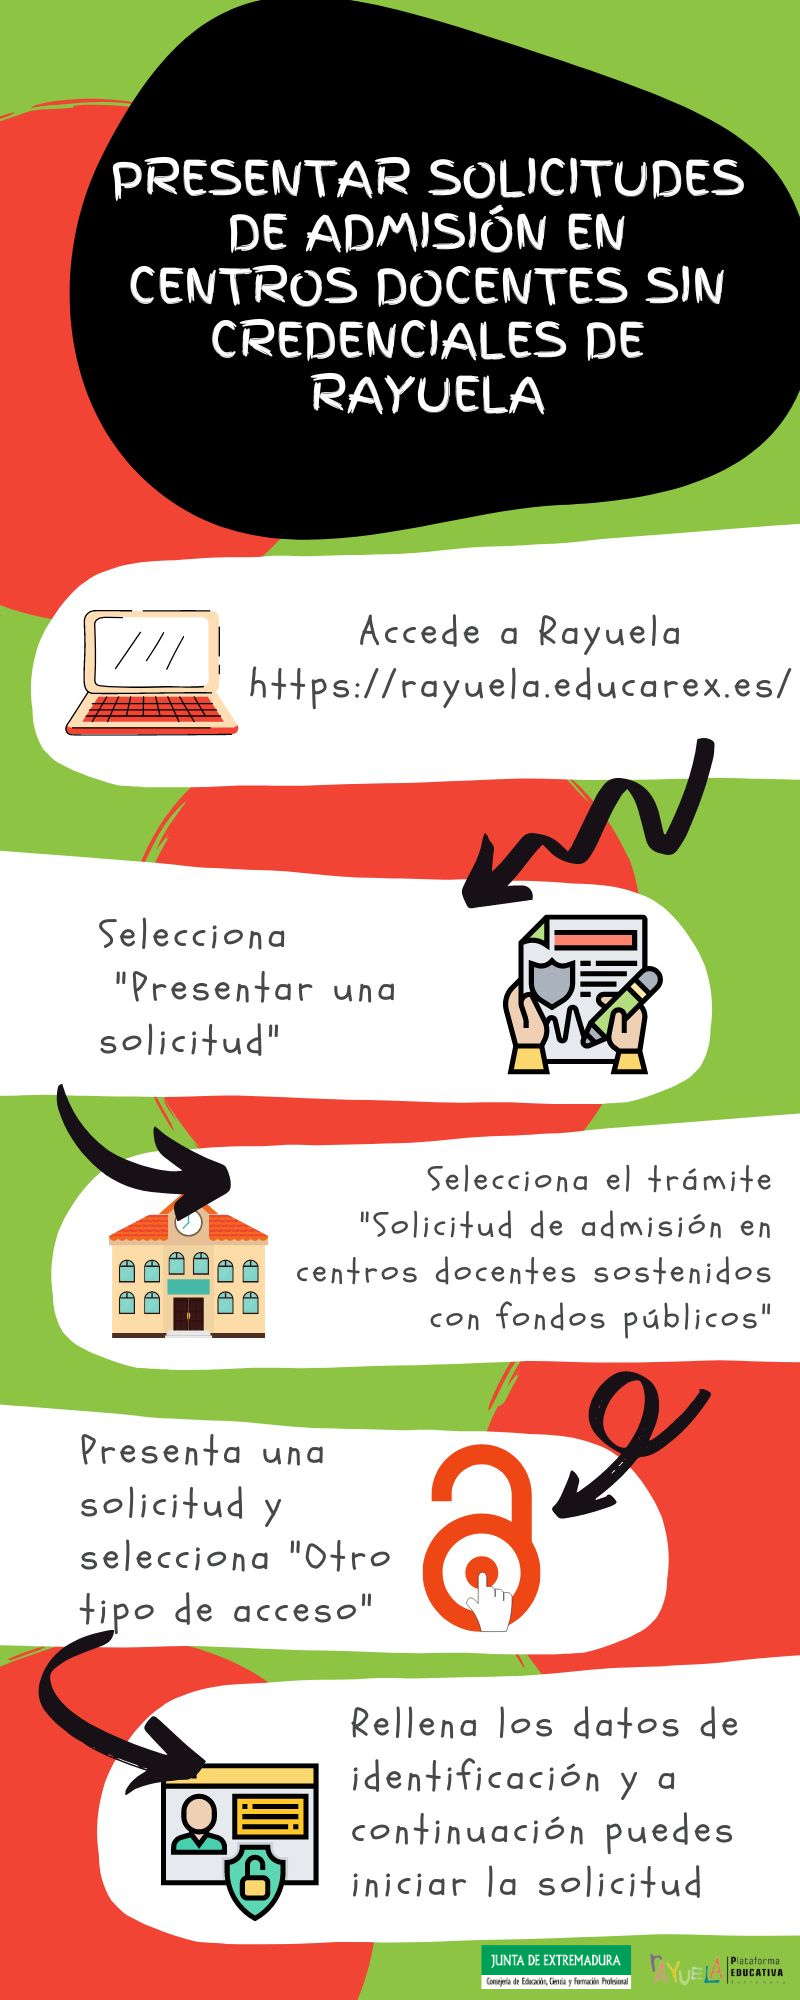 Presentar-solicitudes-de-admisión-en-centros-docentes-sin-credenciales-de-Rayuela.png